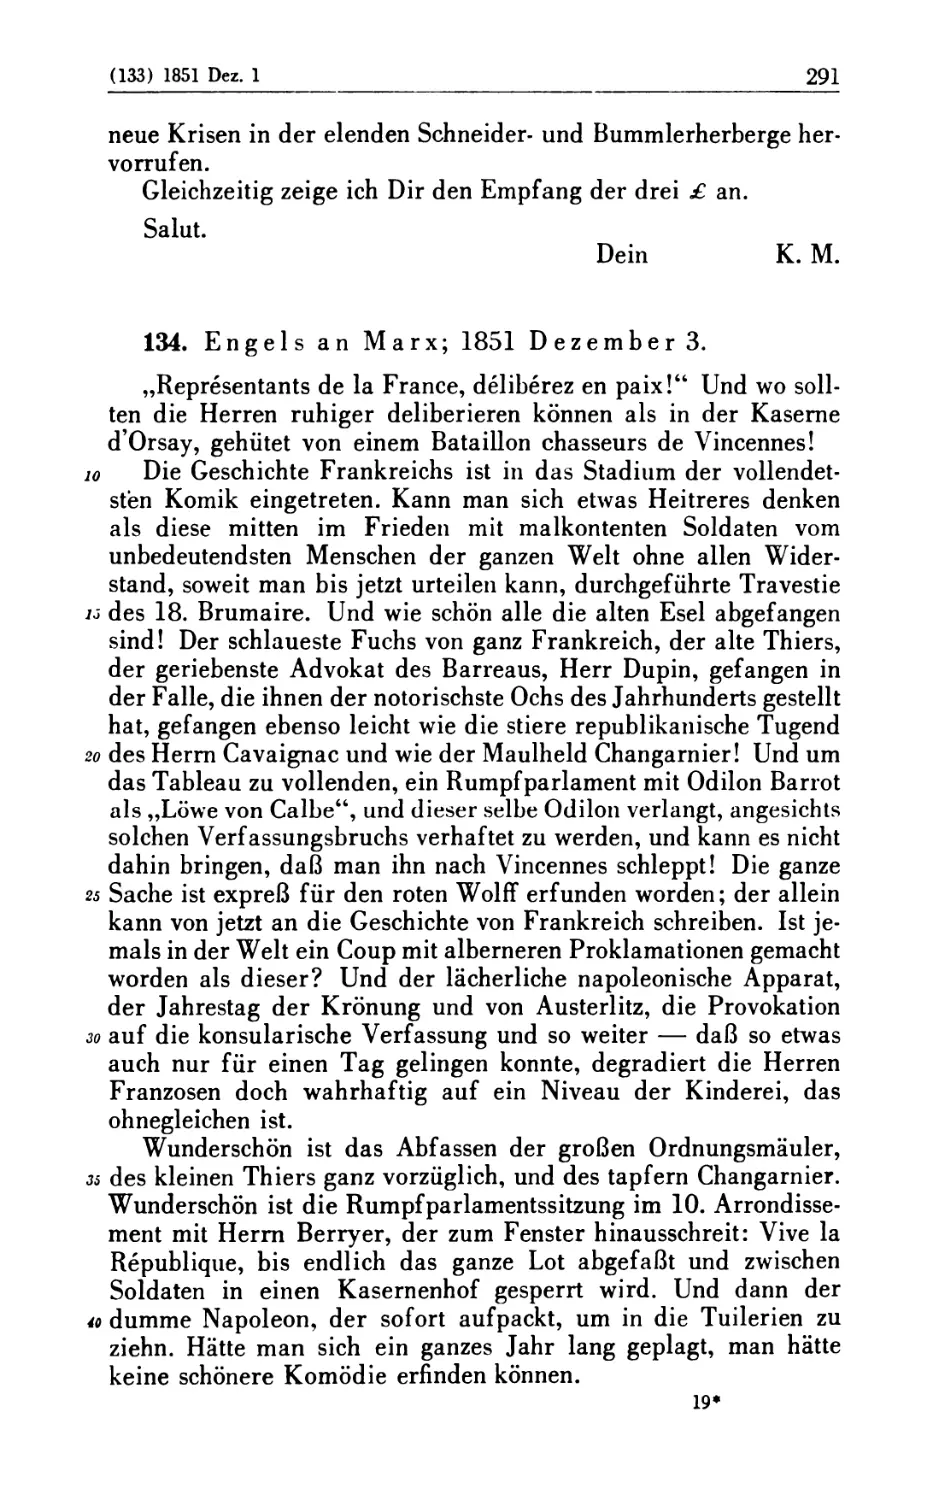 134. Engels an Marx; 1851 Dezember 3